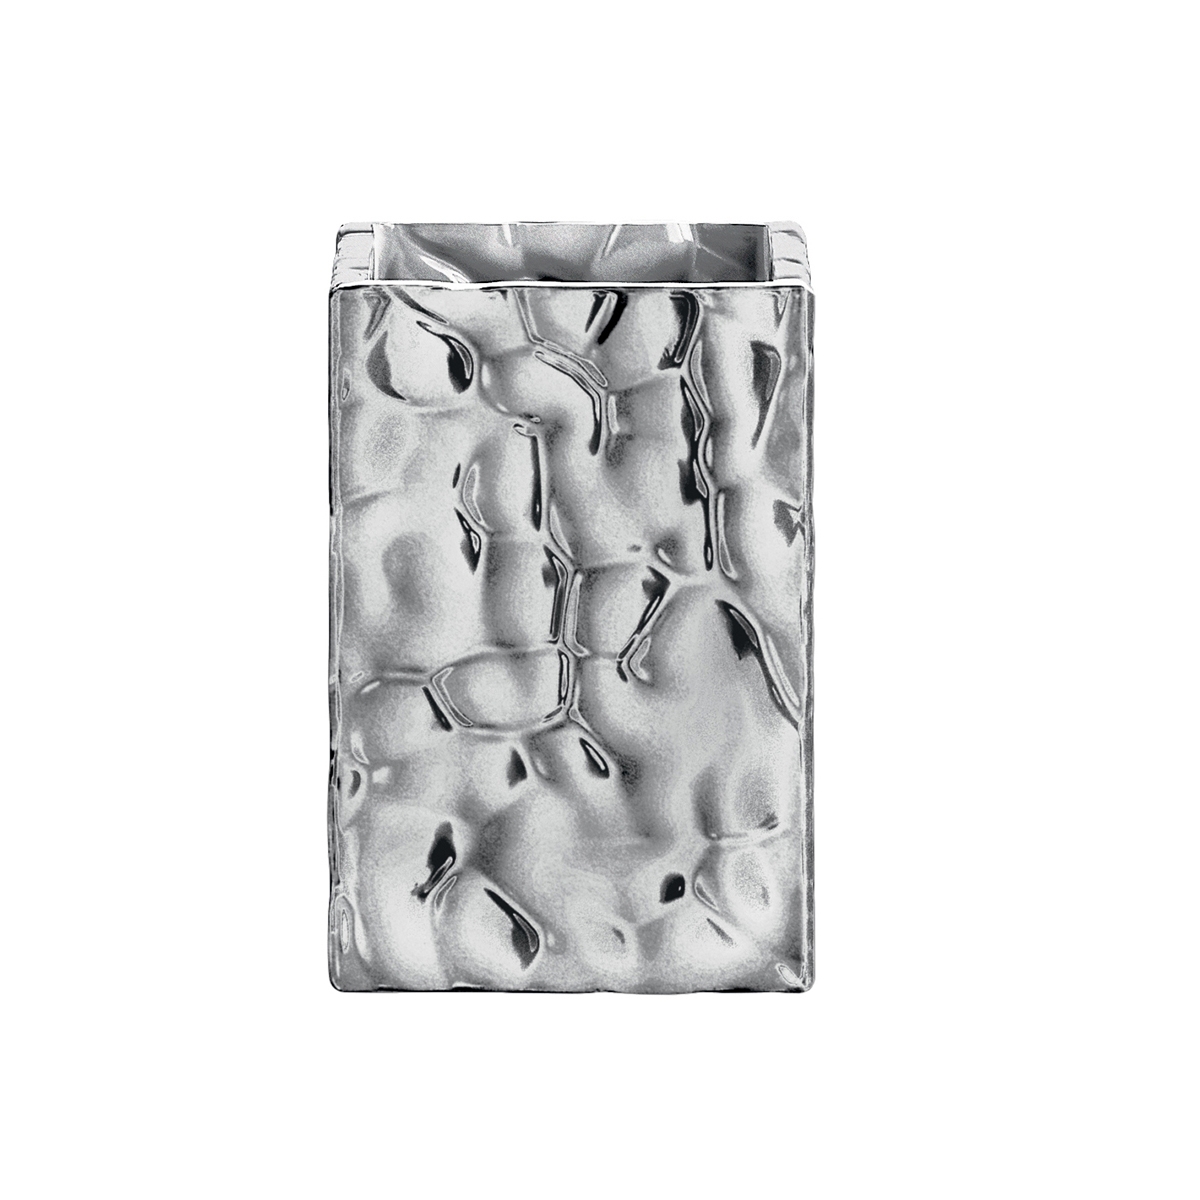 Porta spazzolini in ceramica argento - 1